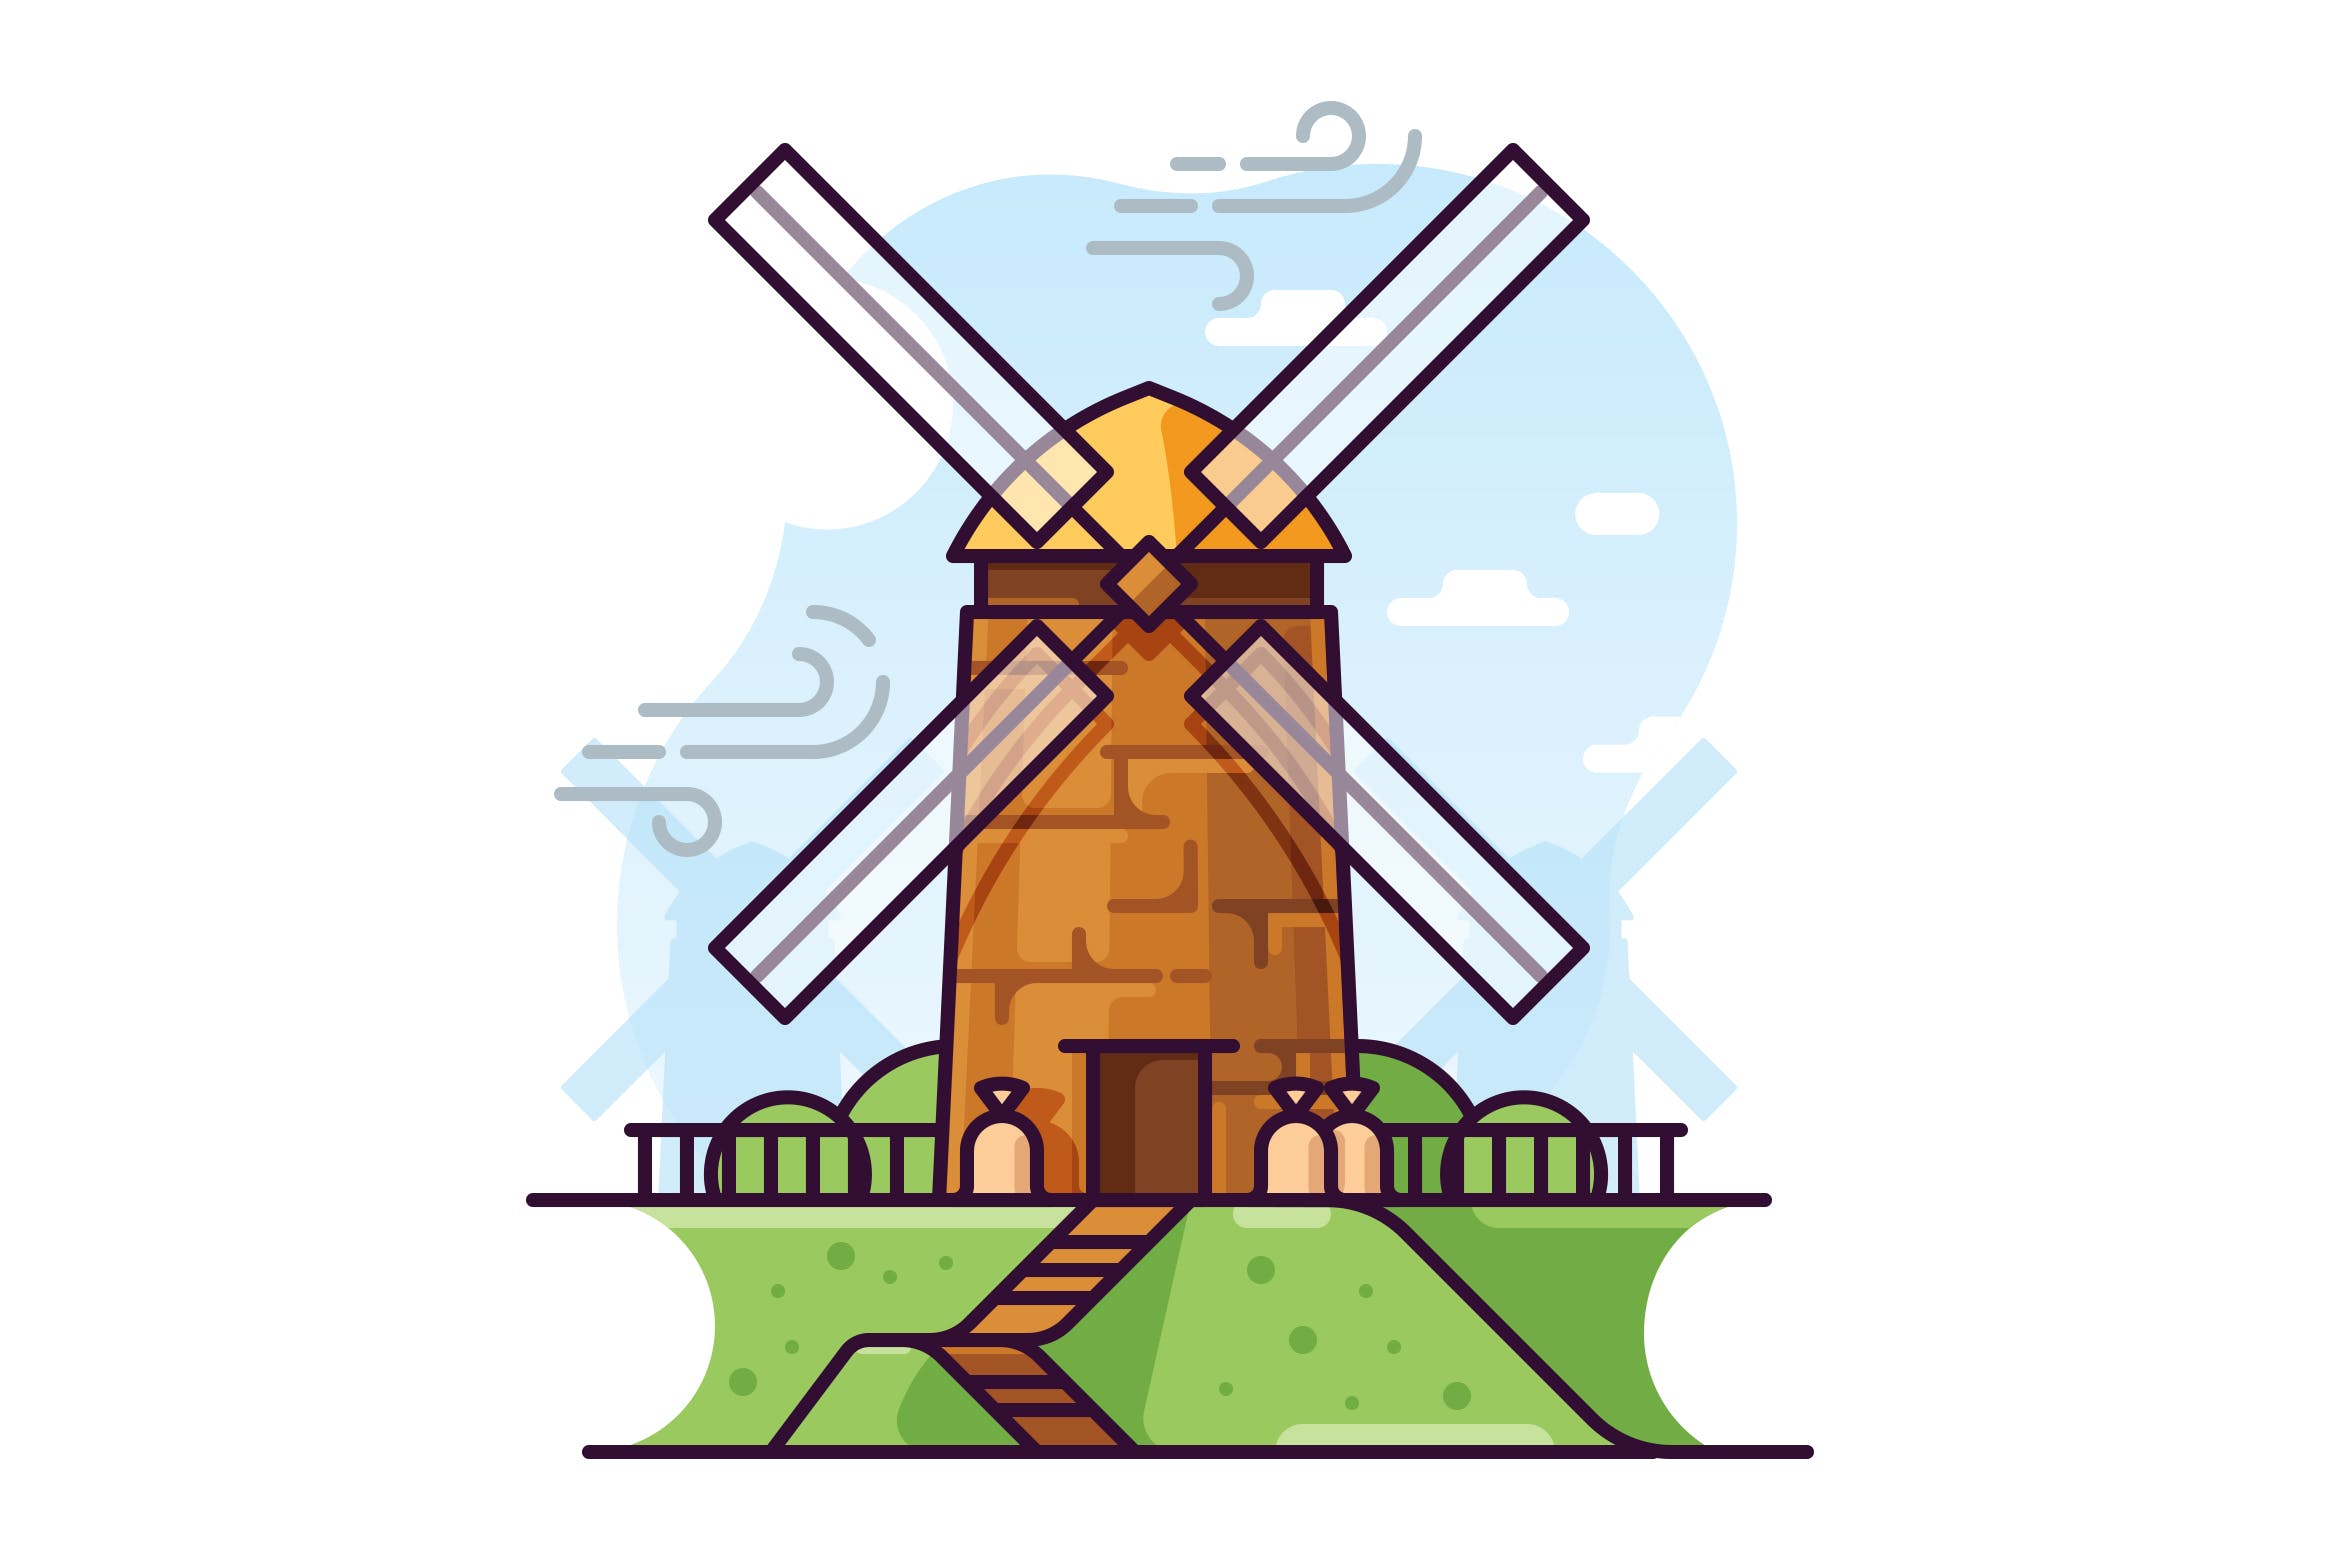 风车磨坊手绘矢量插画素材库精选素材 Windmill illustration插图